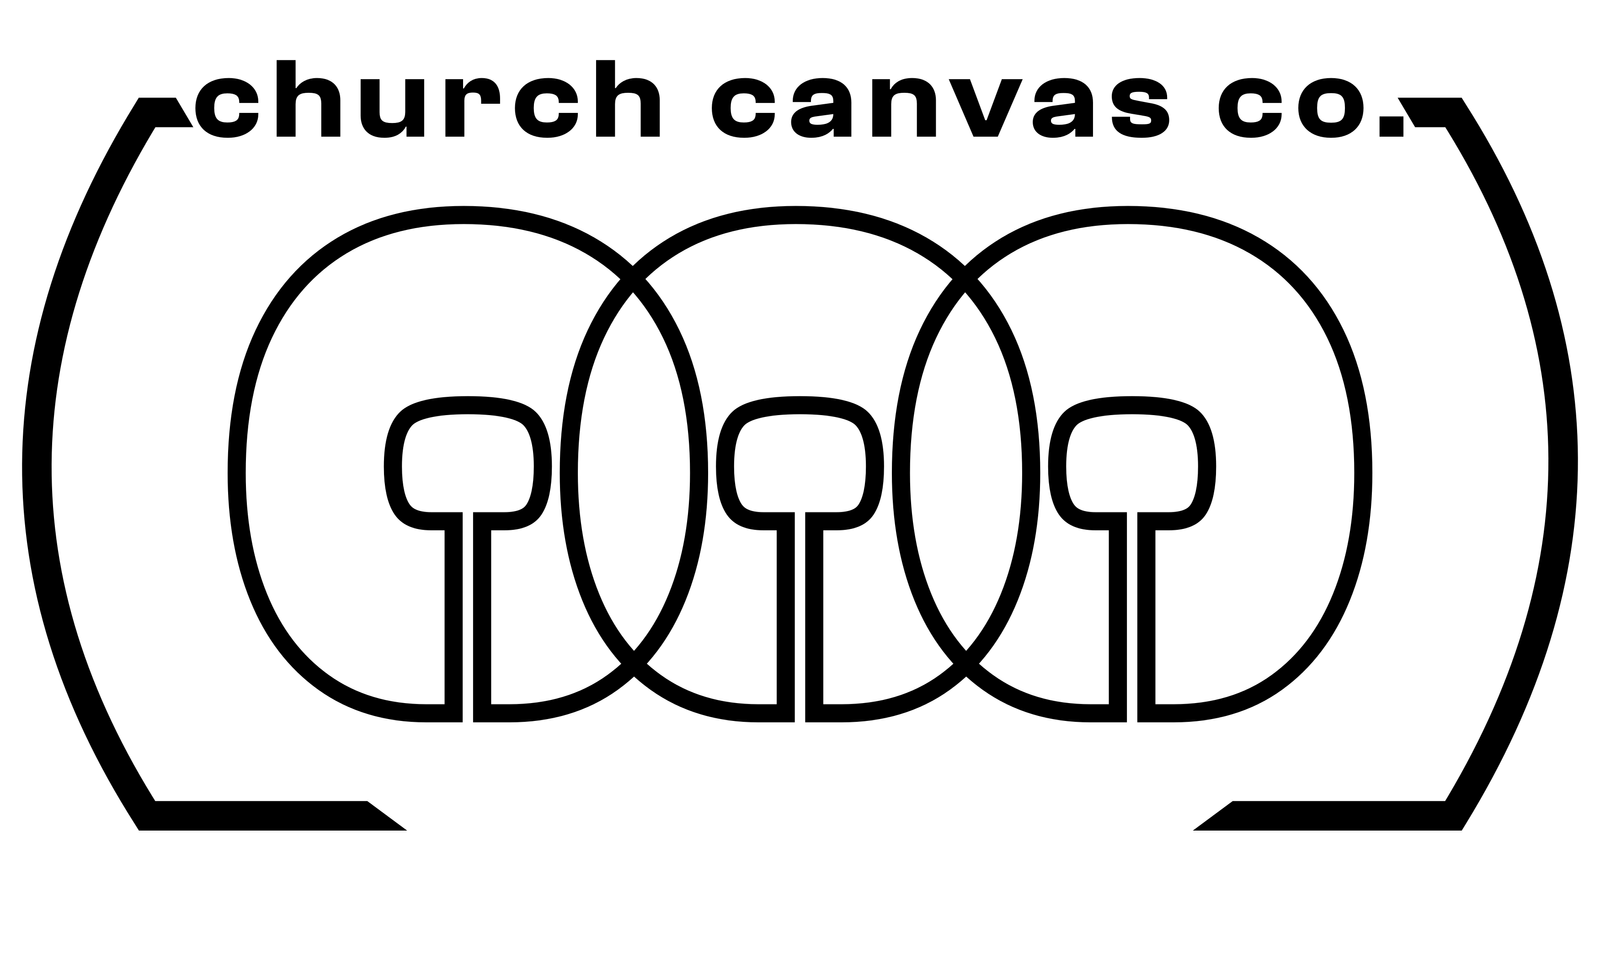 CHURCH CANVAS CO LOGO BLK